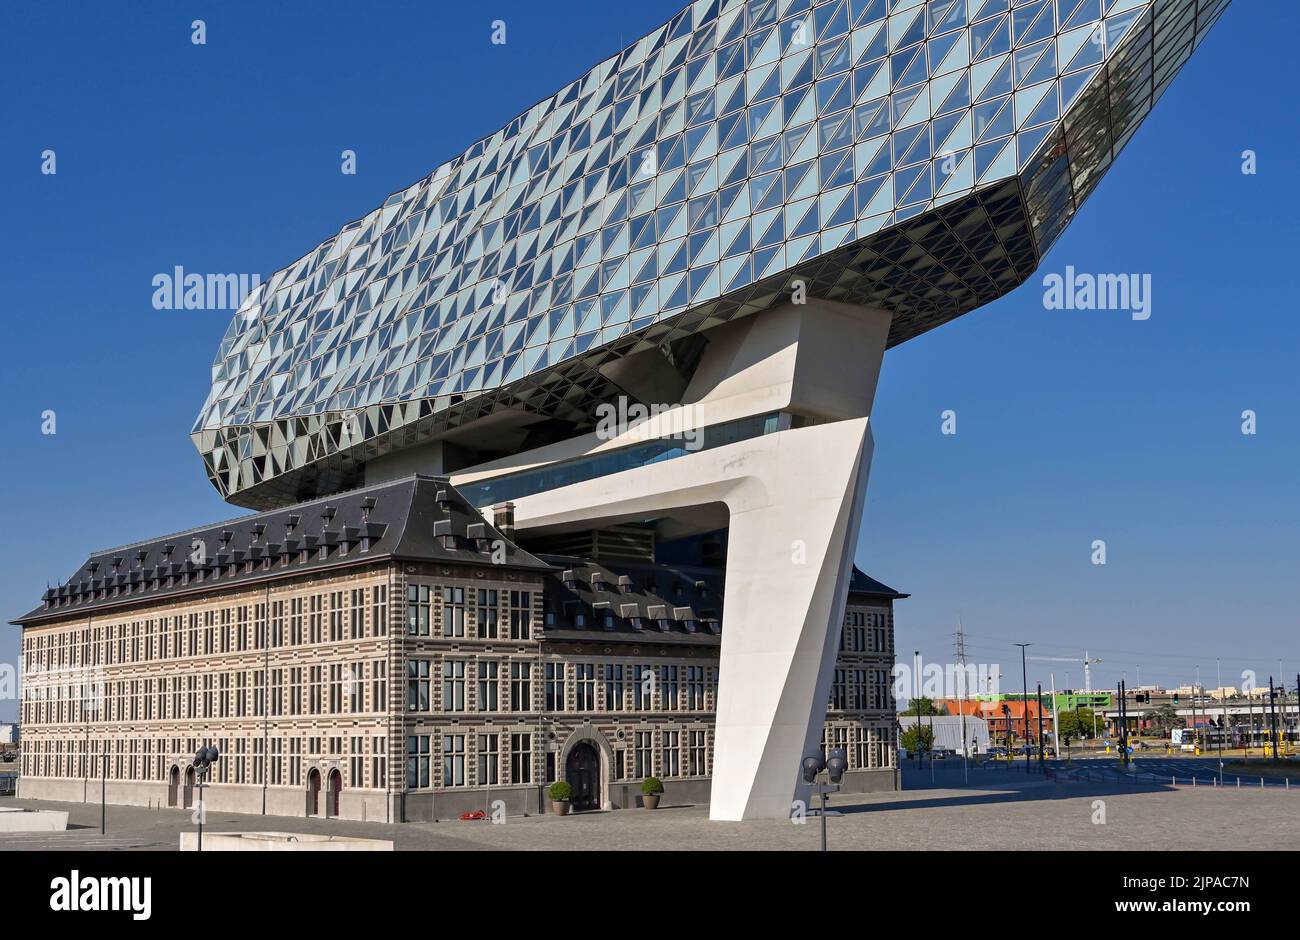 Anversa, Belgio - Agosto 2022: Esterno dell'edificio dell'autorità portuale di Anversa nei moli commerciali della città. L'architetto era Zaha Hadid. Foto Stock